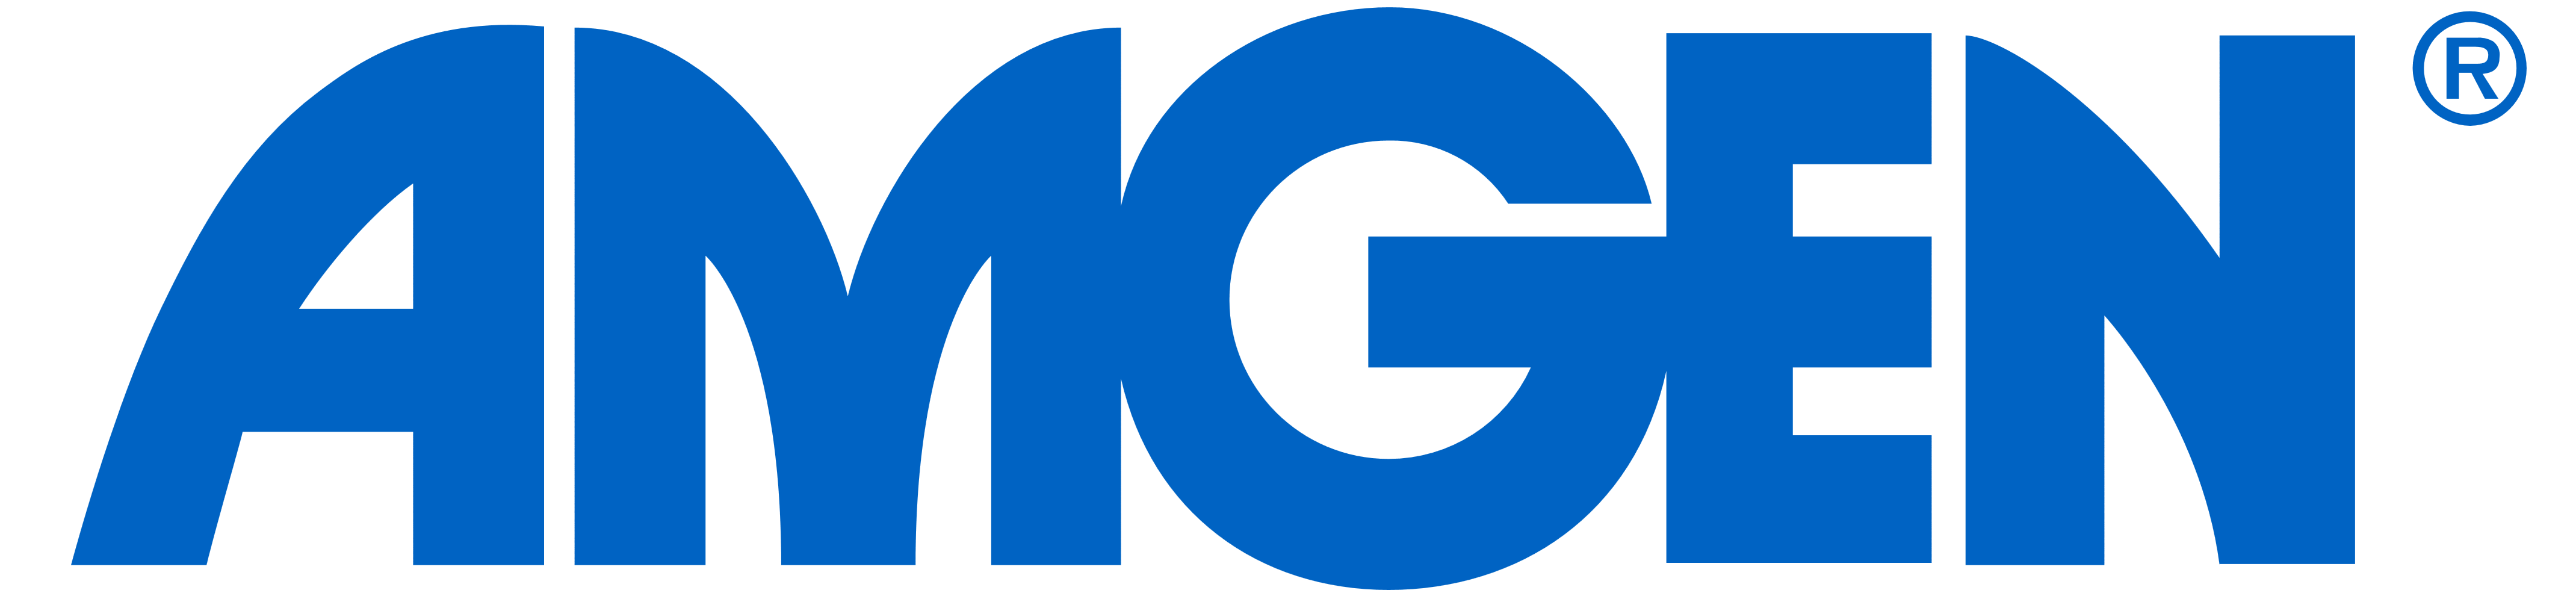 Amgen_logo_logotype.png